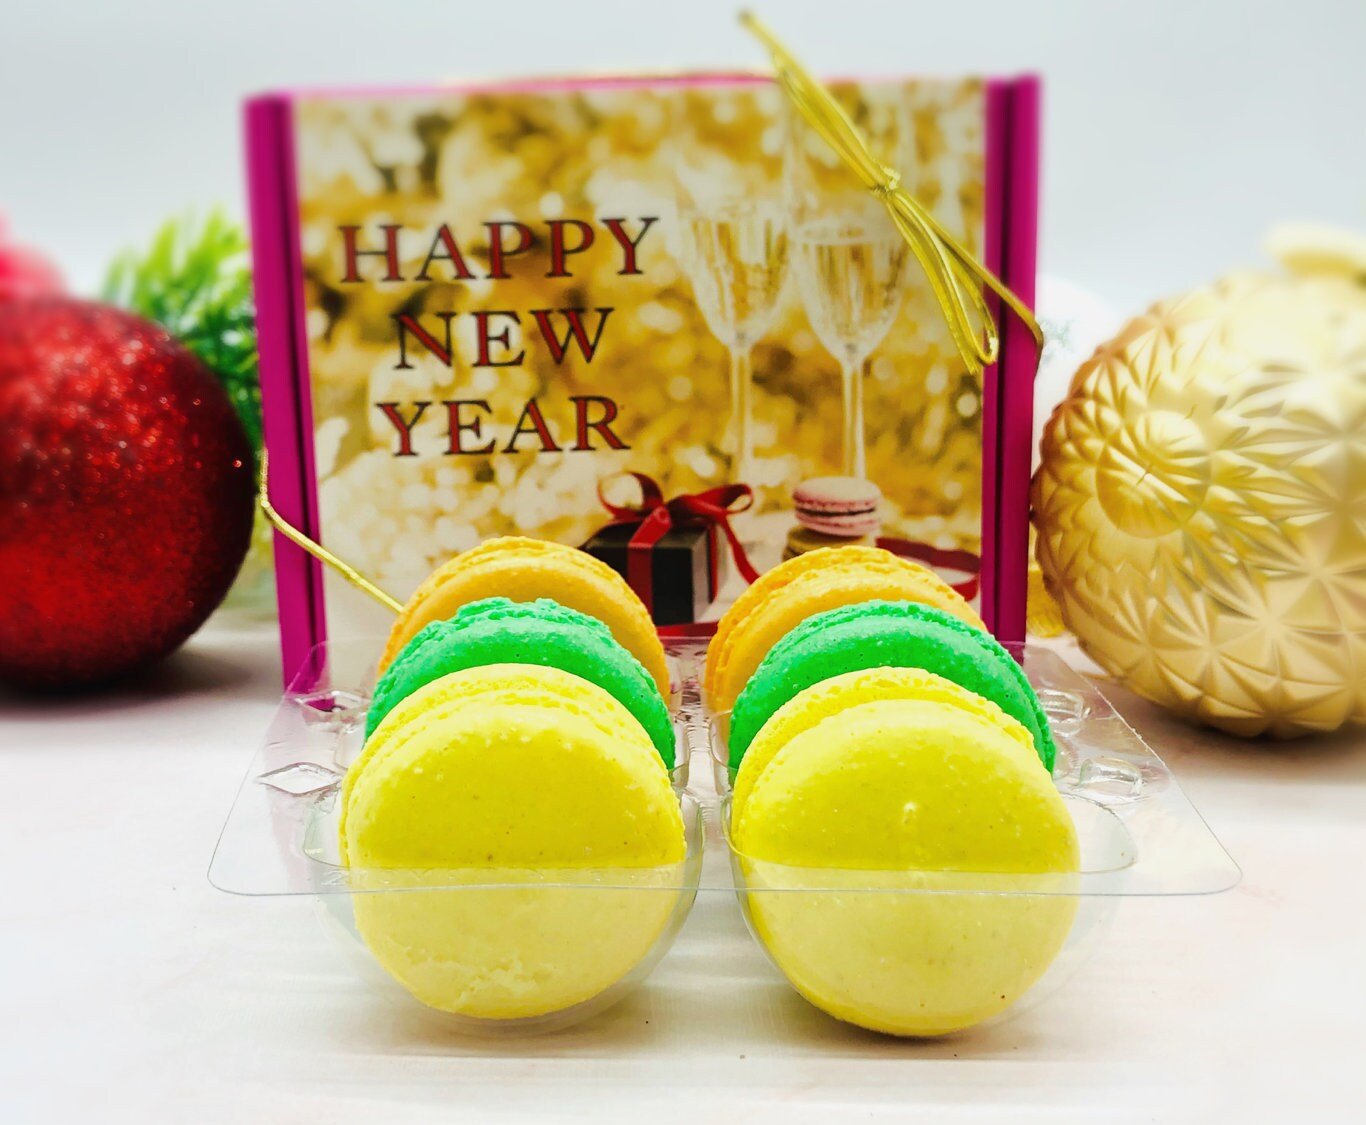 Happy New Year 6 Pack Macaron Gift Box - Macaron CentraleBirthday Cake